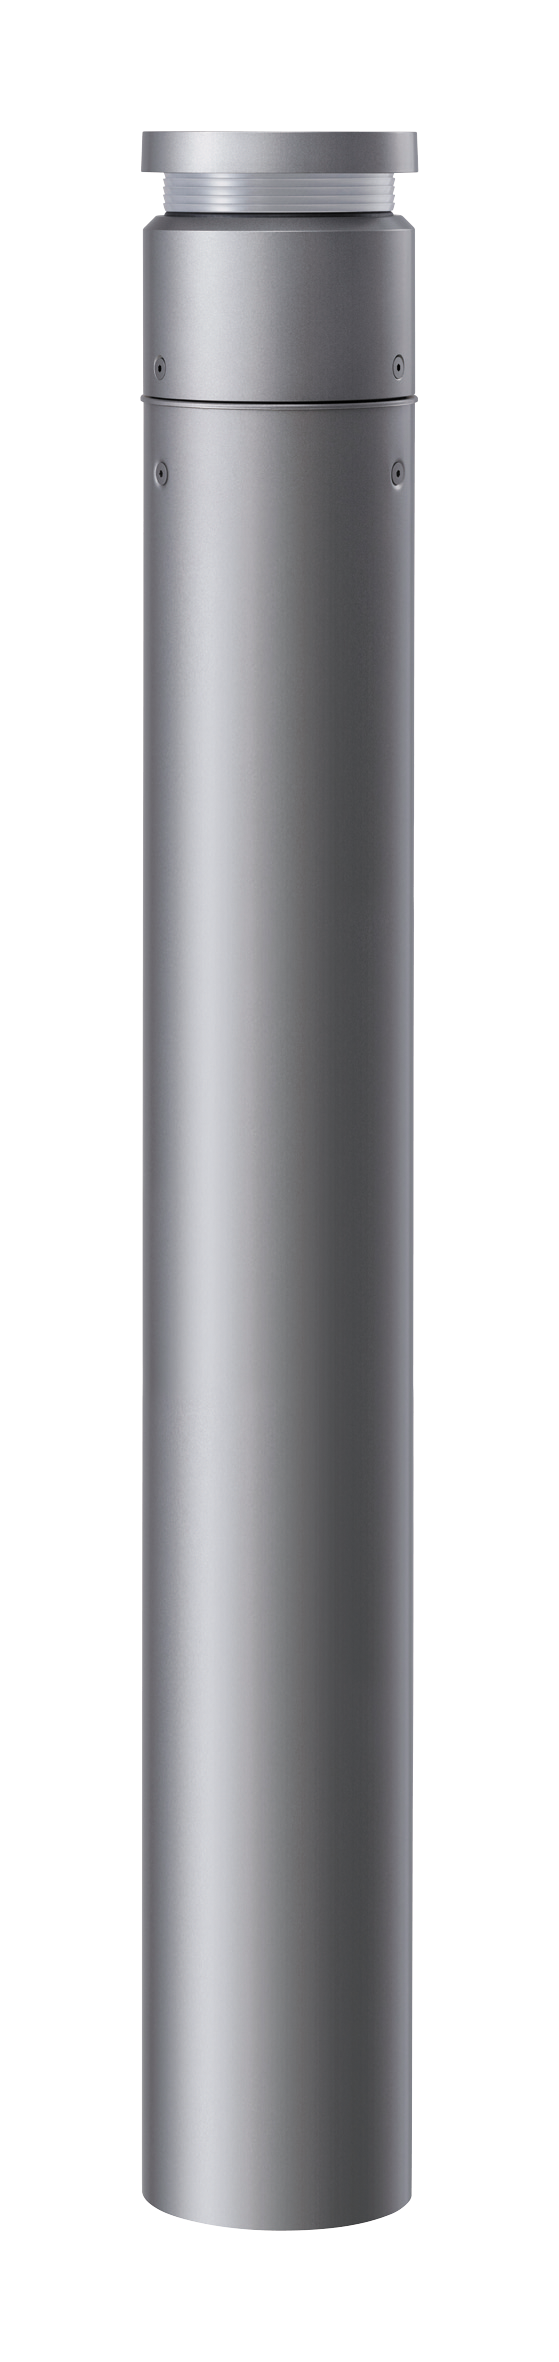 Panasonic パナソニック YYY76161 ローポールライト ランプ別売 LED 地中埋込型 片側配光タイプ 地上高457mm 防雨型  ミディアムグレーメタリック 屋外照明